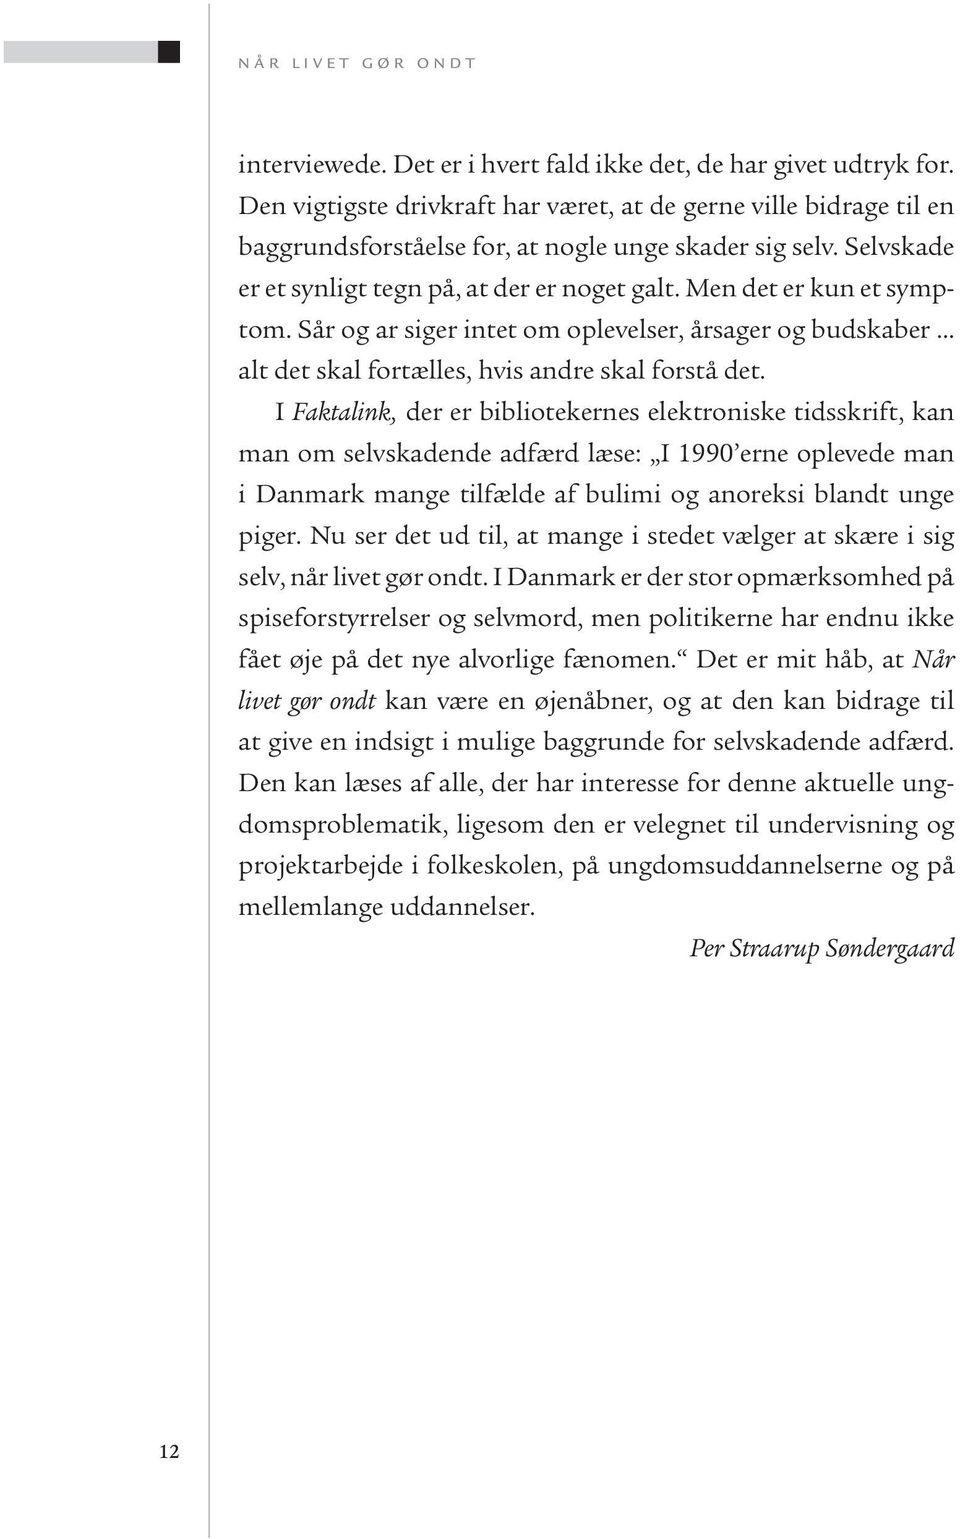 I Faktalink, der er bibliotekernes elektroniske tidsskrift, kan man om selvskadende adfærd læse: I 1990 erne oplevede man i Danmark mange tilfælde af bulimi og anoreksi blandt unge piger.